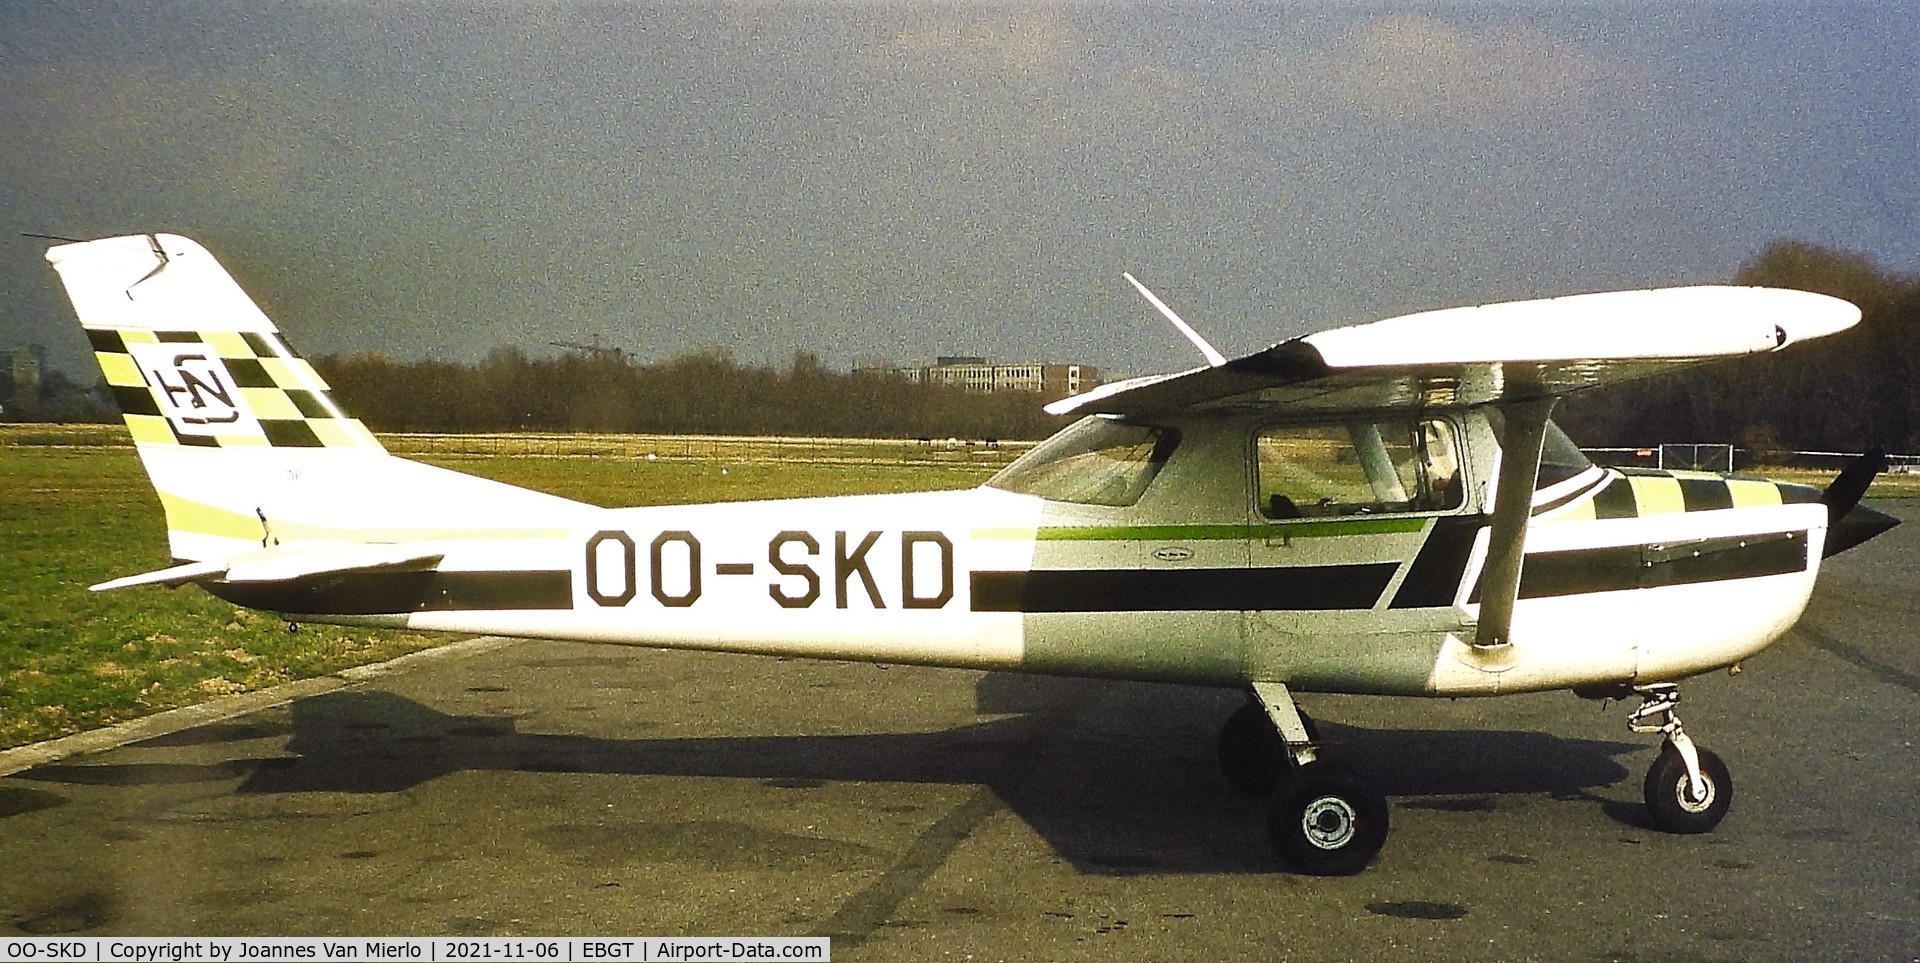 OO-SKD, 1969 Reims F150J C/N 0007, Slide scan